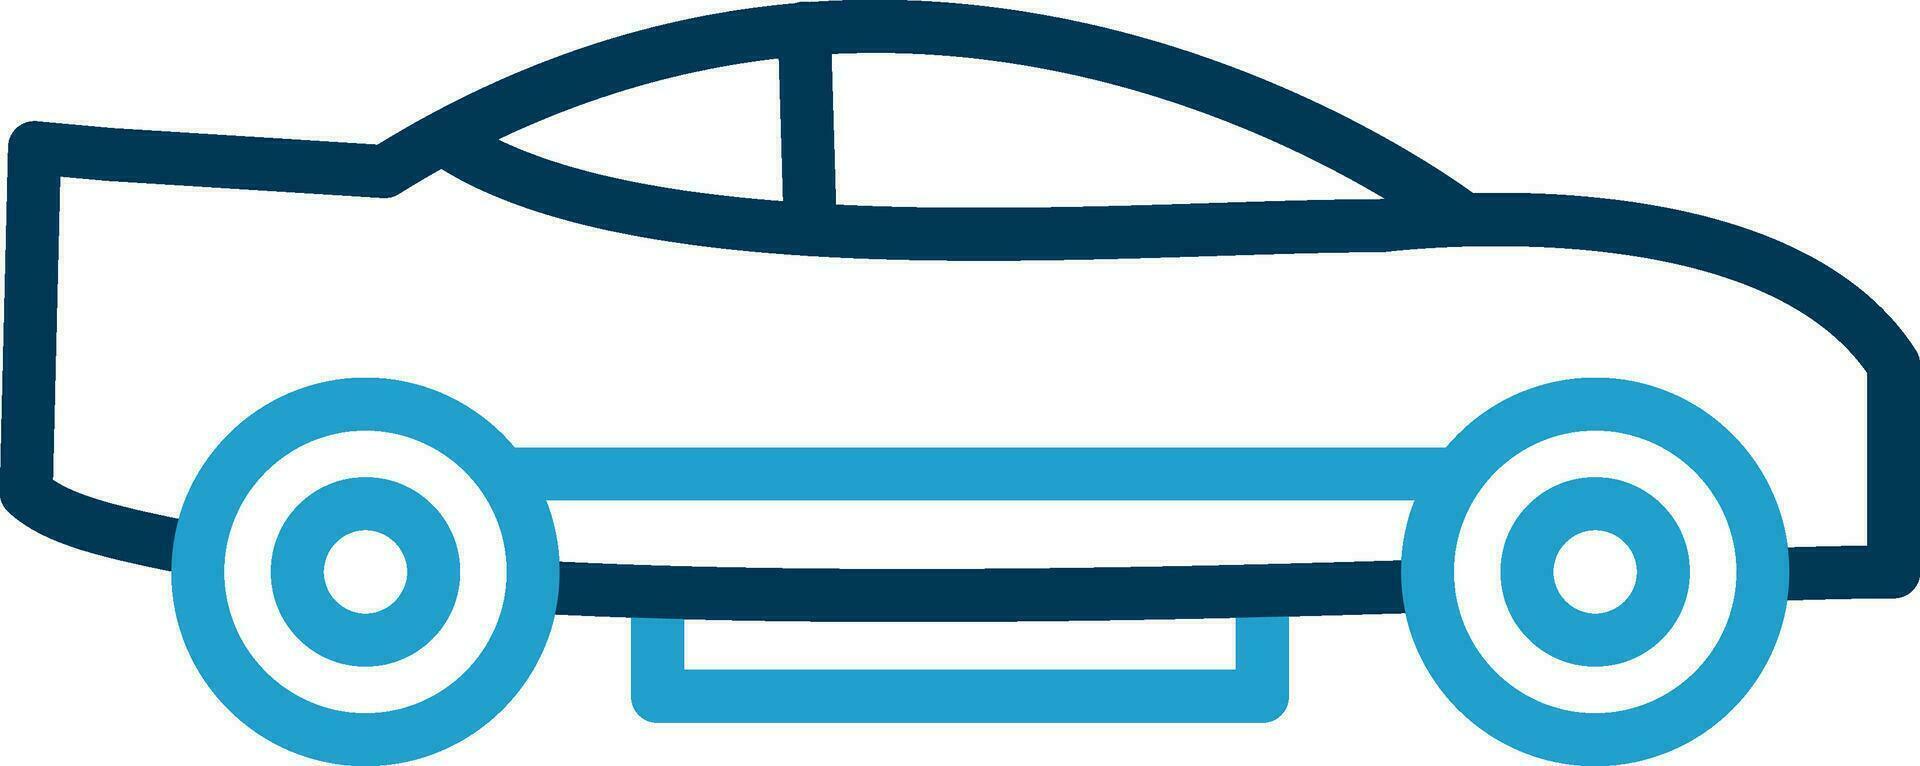 Car Vector Icon Design